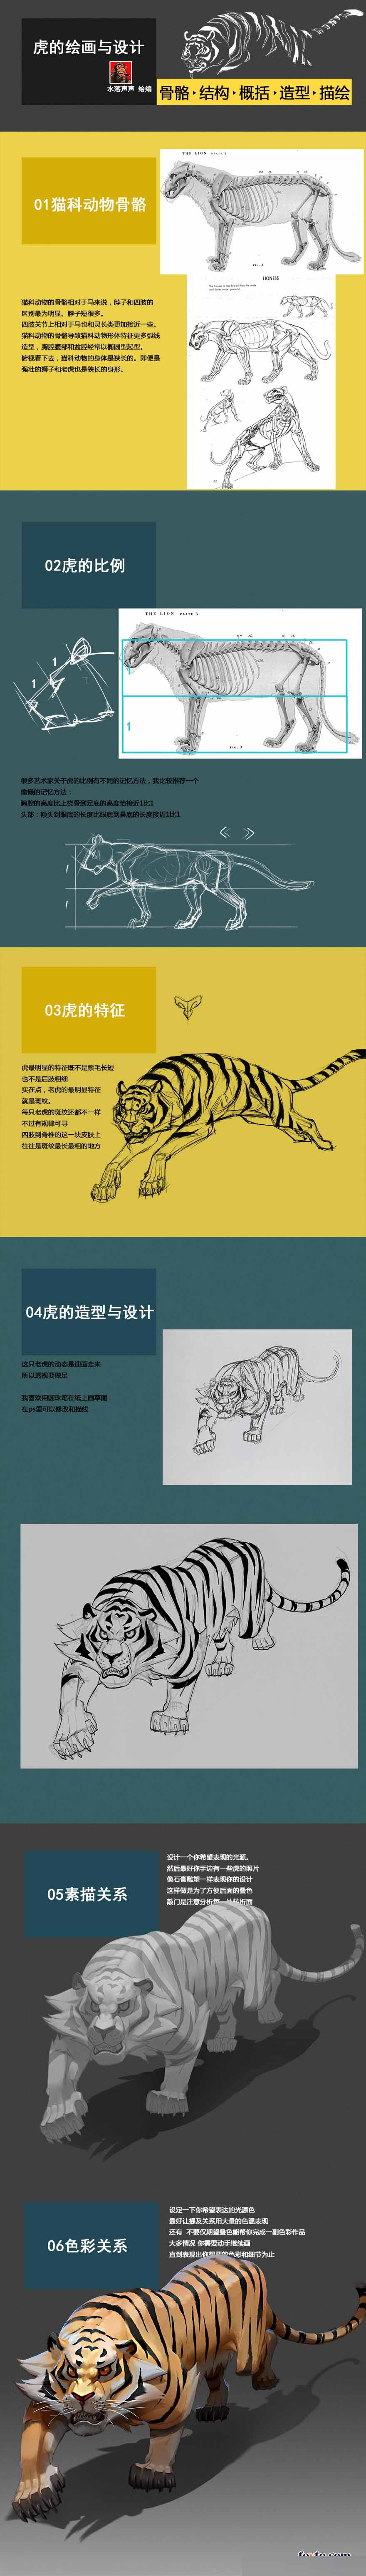 老虎的绘画与设计研究教程